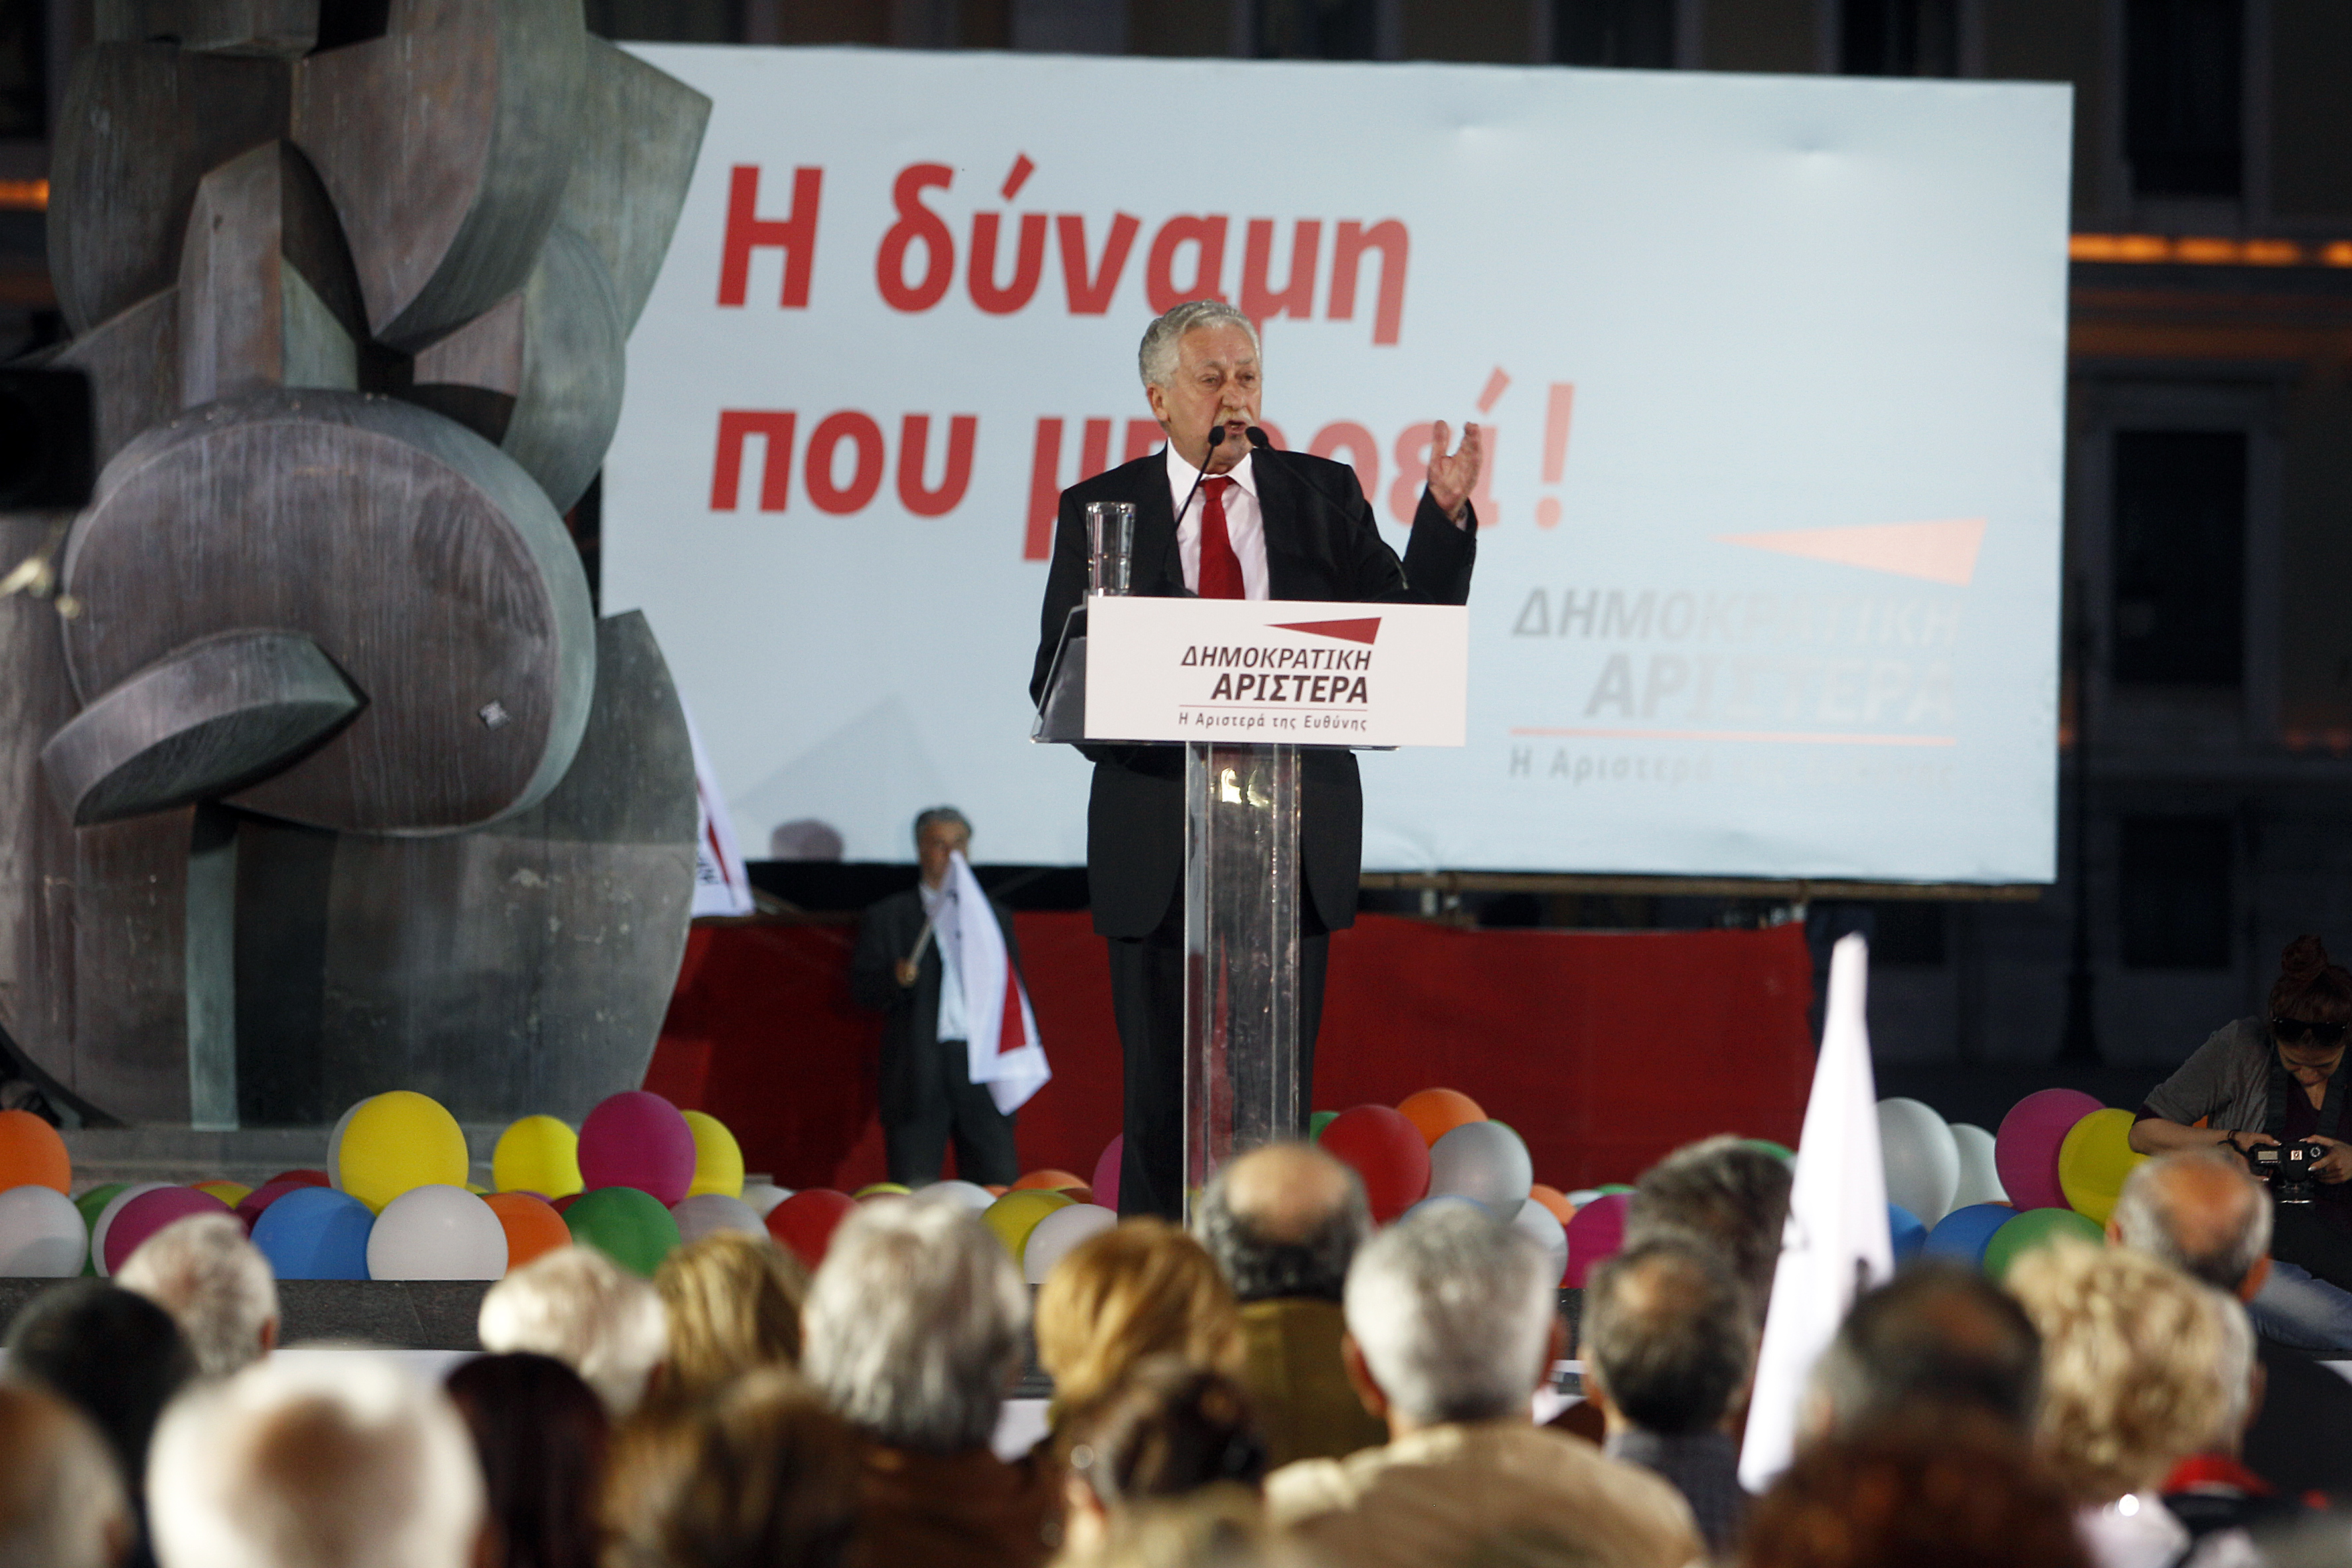 Φ. Κουβέλης: «Είμαστε η ευρωπαϊκή αριστερά που δεν λαϊκίζει»